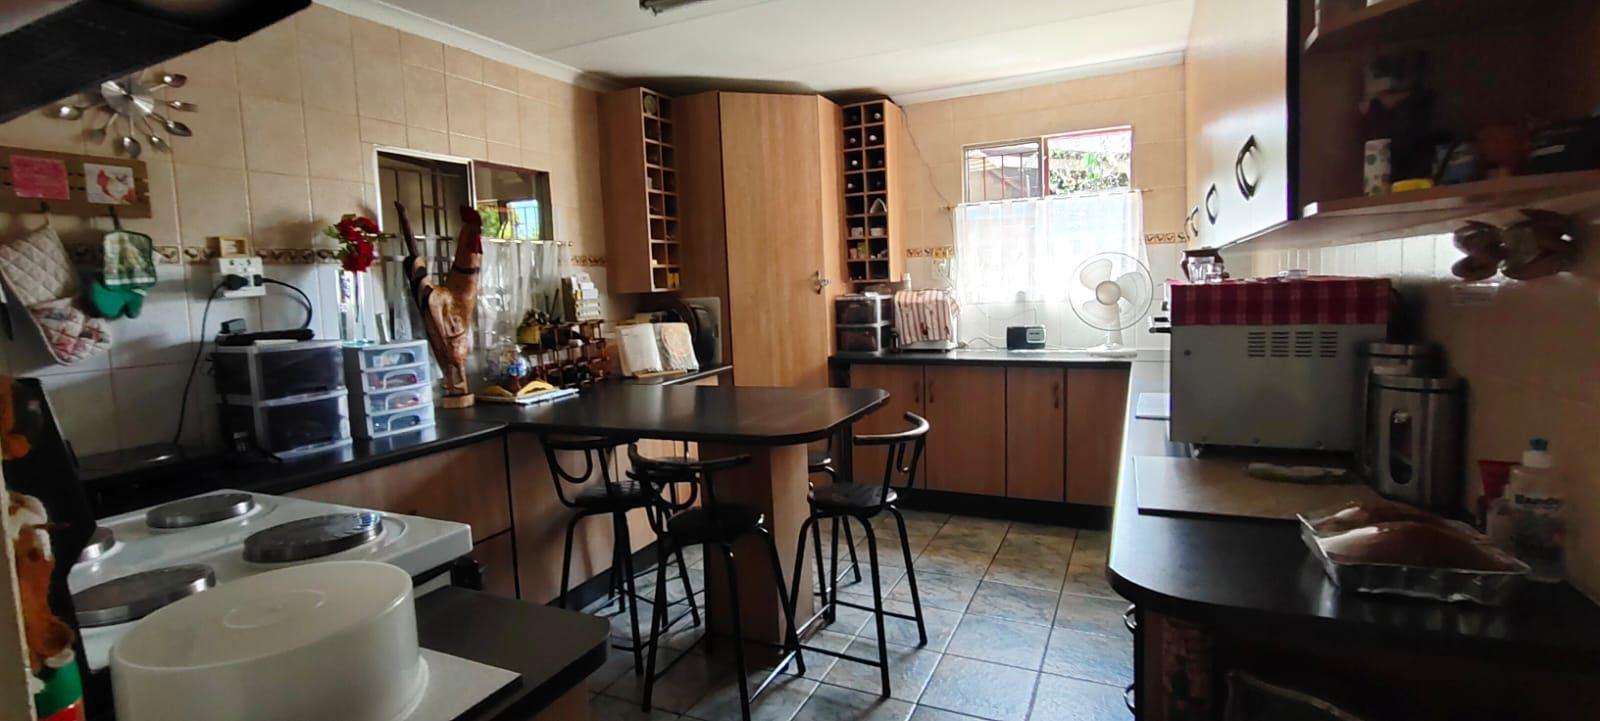 11 Bedroom Property for Sale in Vaalbank Gauteng